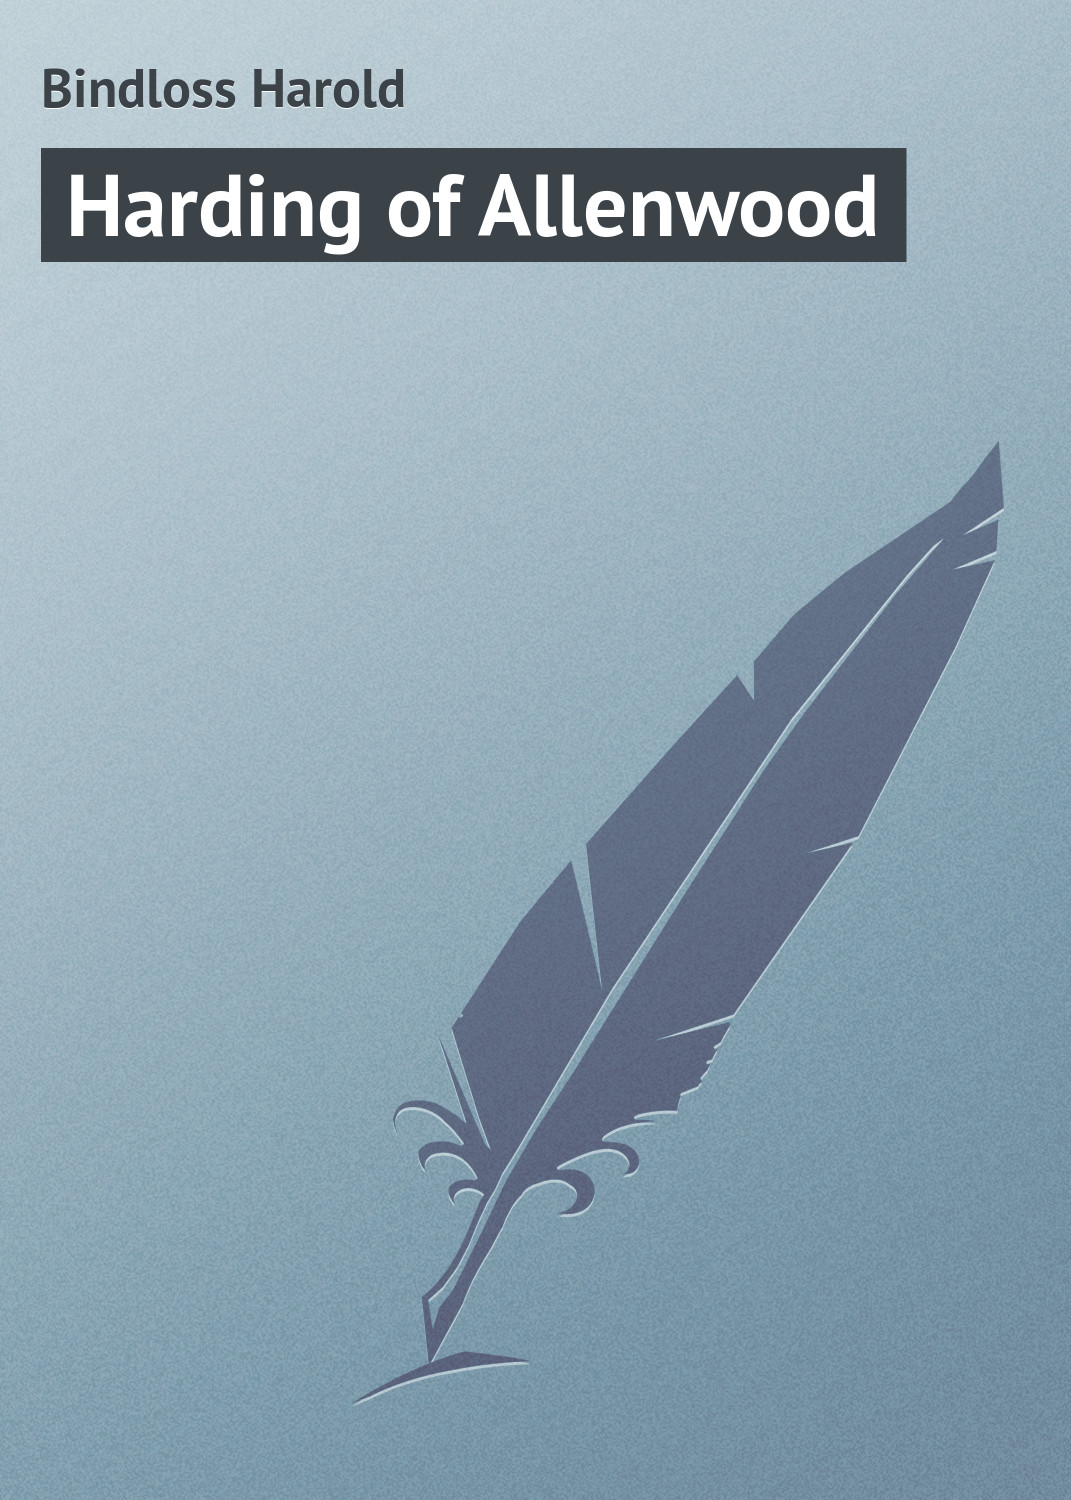 Книга Harding of Allenwood из серии , созданная Harold Bindloss, может относится к жанру Зарубежная классика. Стоимость электронной книги Harding of Allenwood с идентификатором 23166059 составляет 5.99 руб.